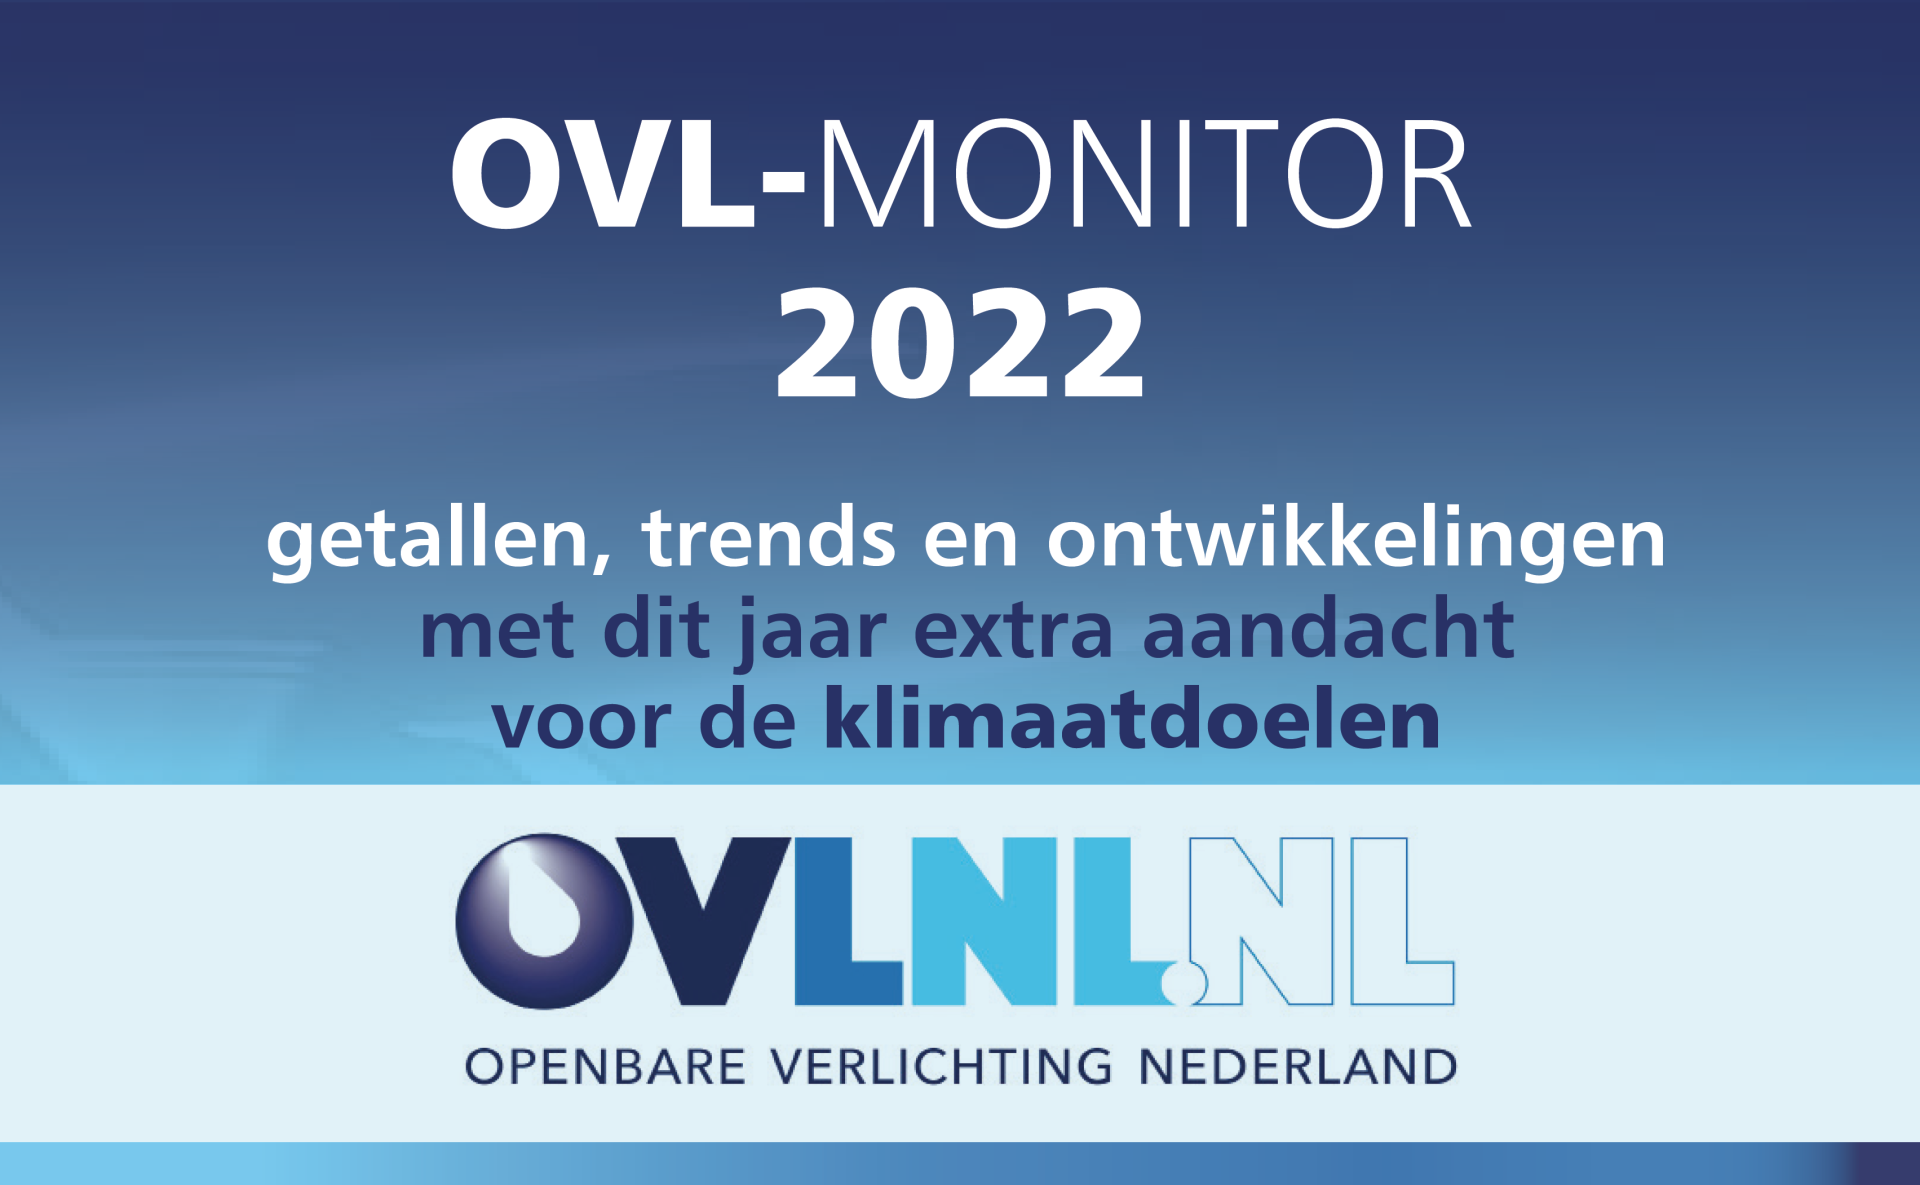 OVNL Openbare Verlichting Nederland: getallen, trends en ontwikkelingen 2022